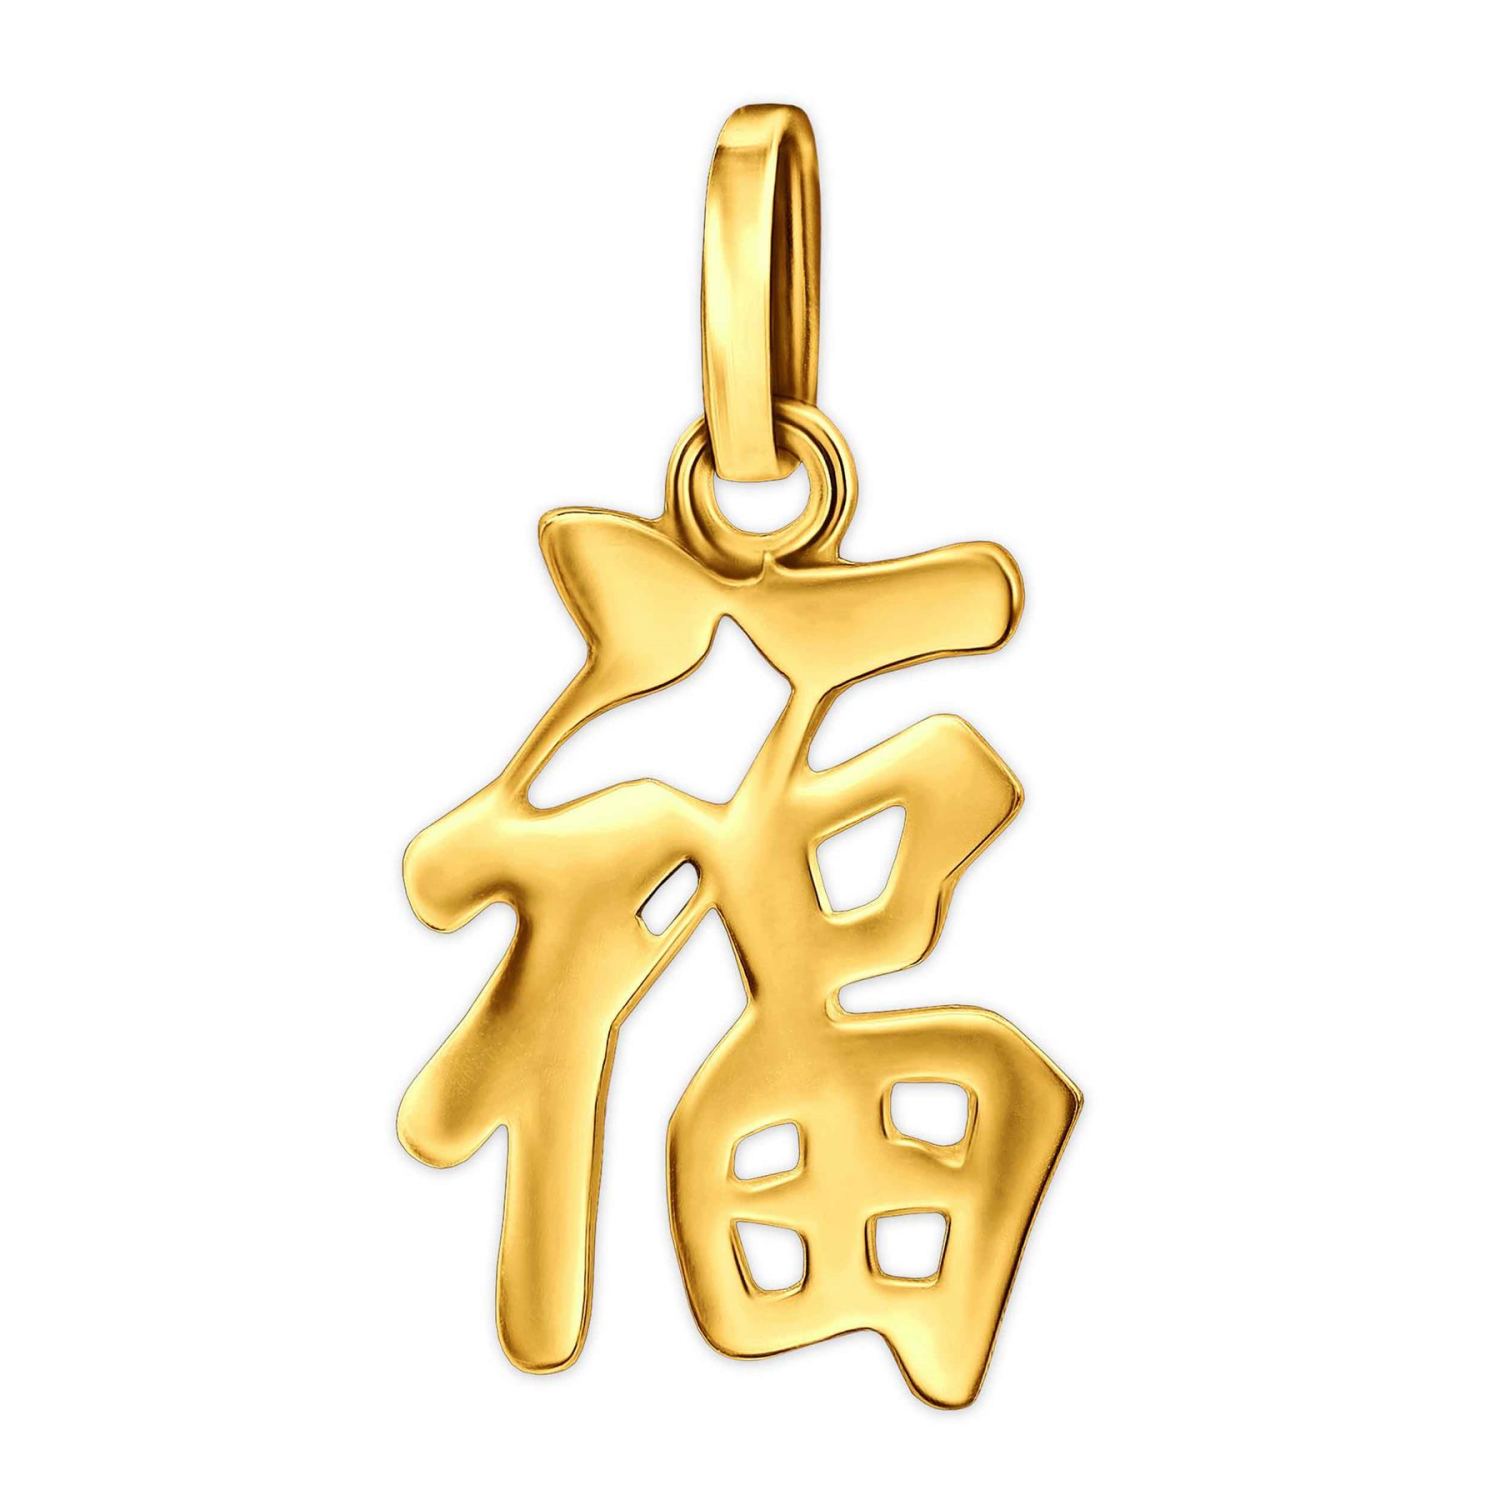 Goldener Anhänger chinesisches Zeichen für Glück & Gesundheit offen glänzend 333 GOLD 8 KARAT